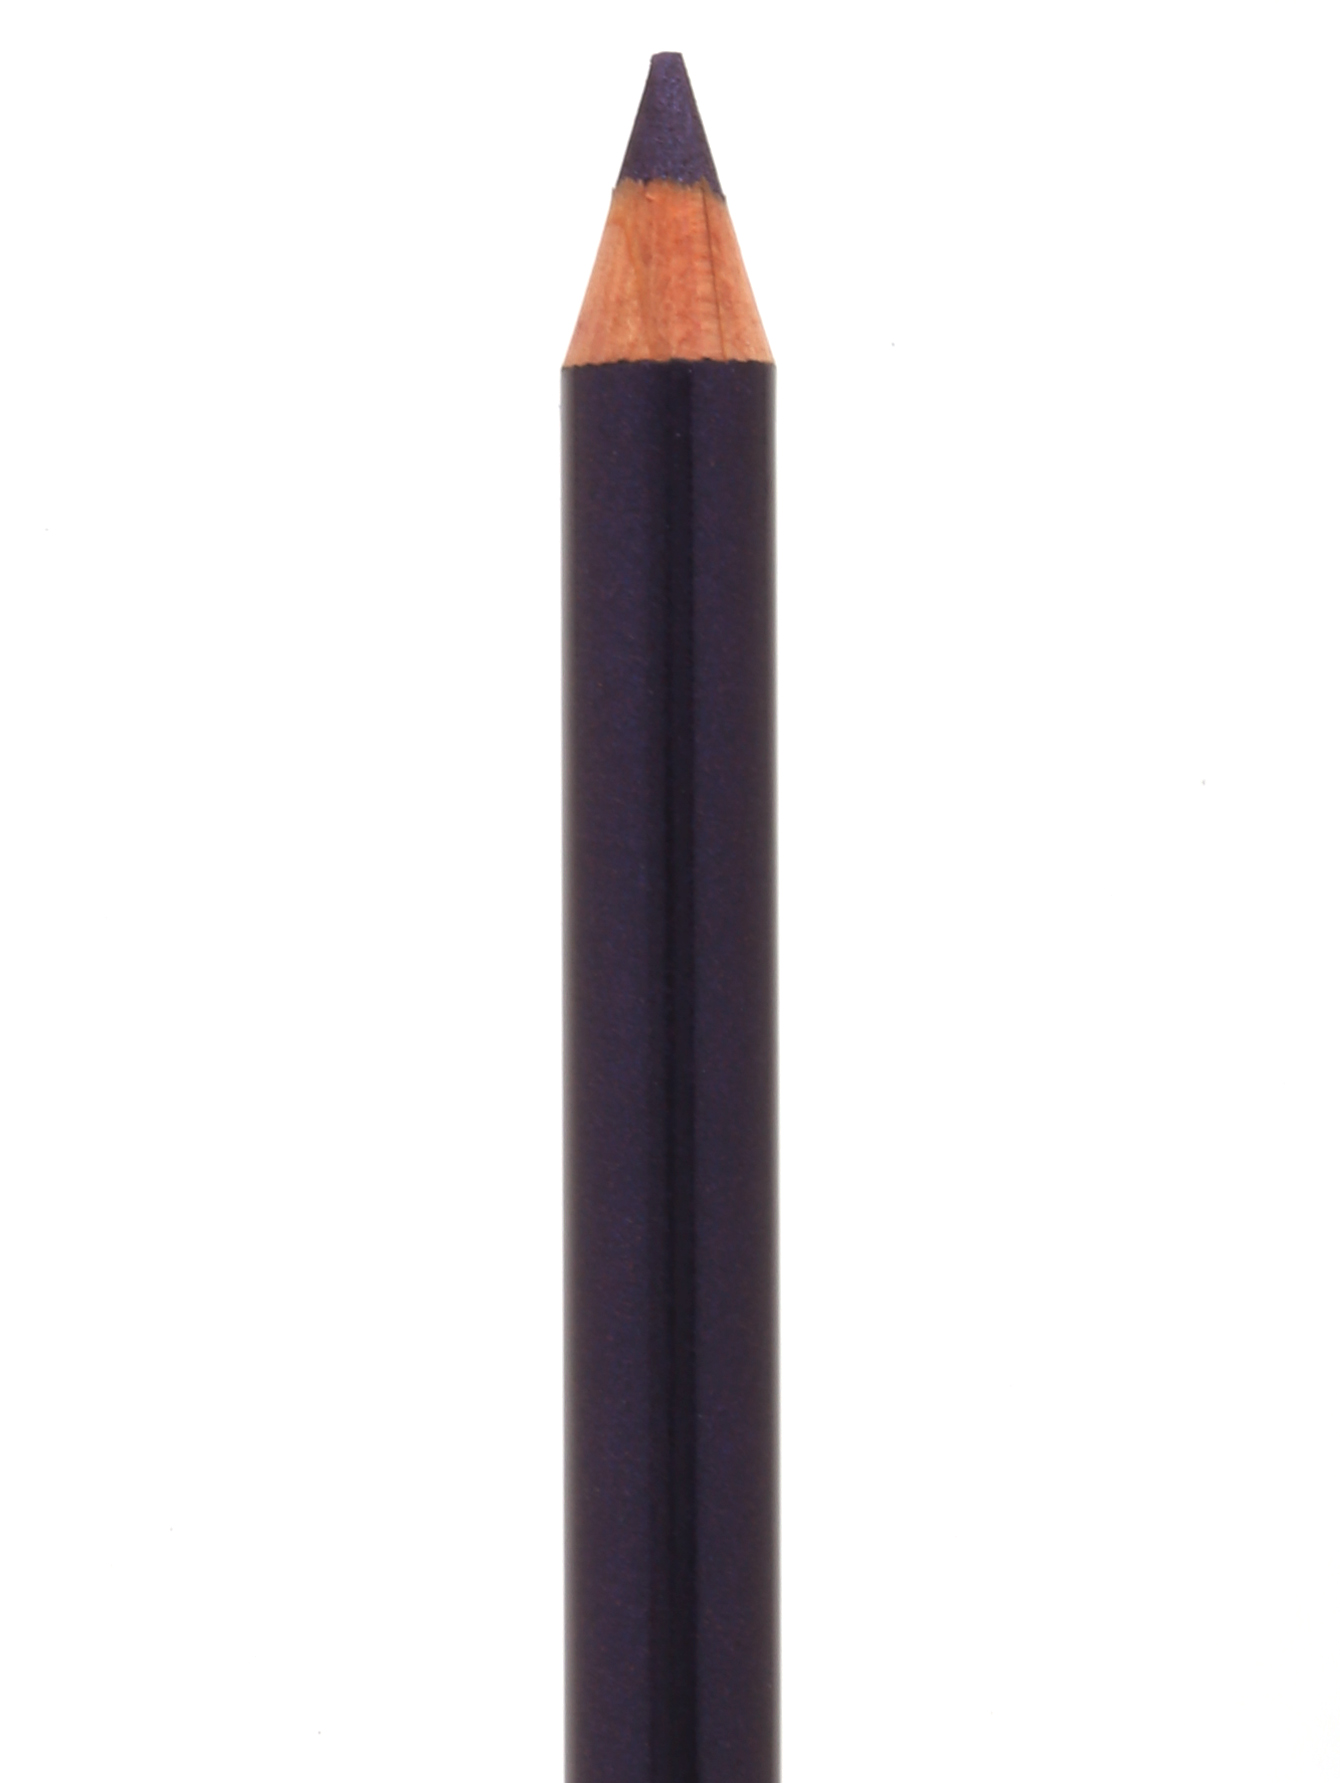  Карандаш для глаз с кистью - №10 True violet, Crayon Khol - Общий вид